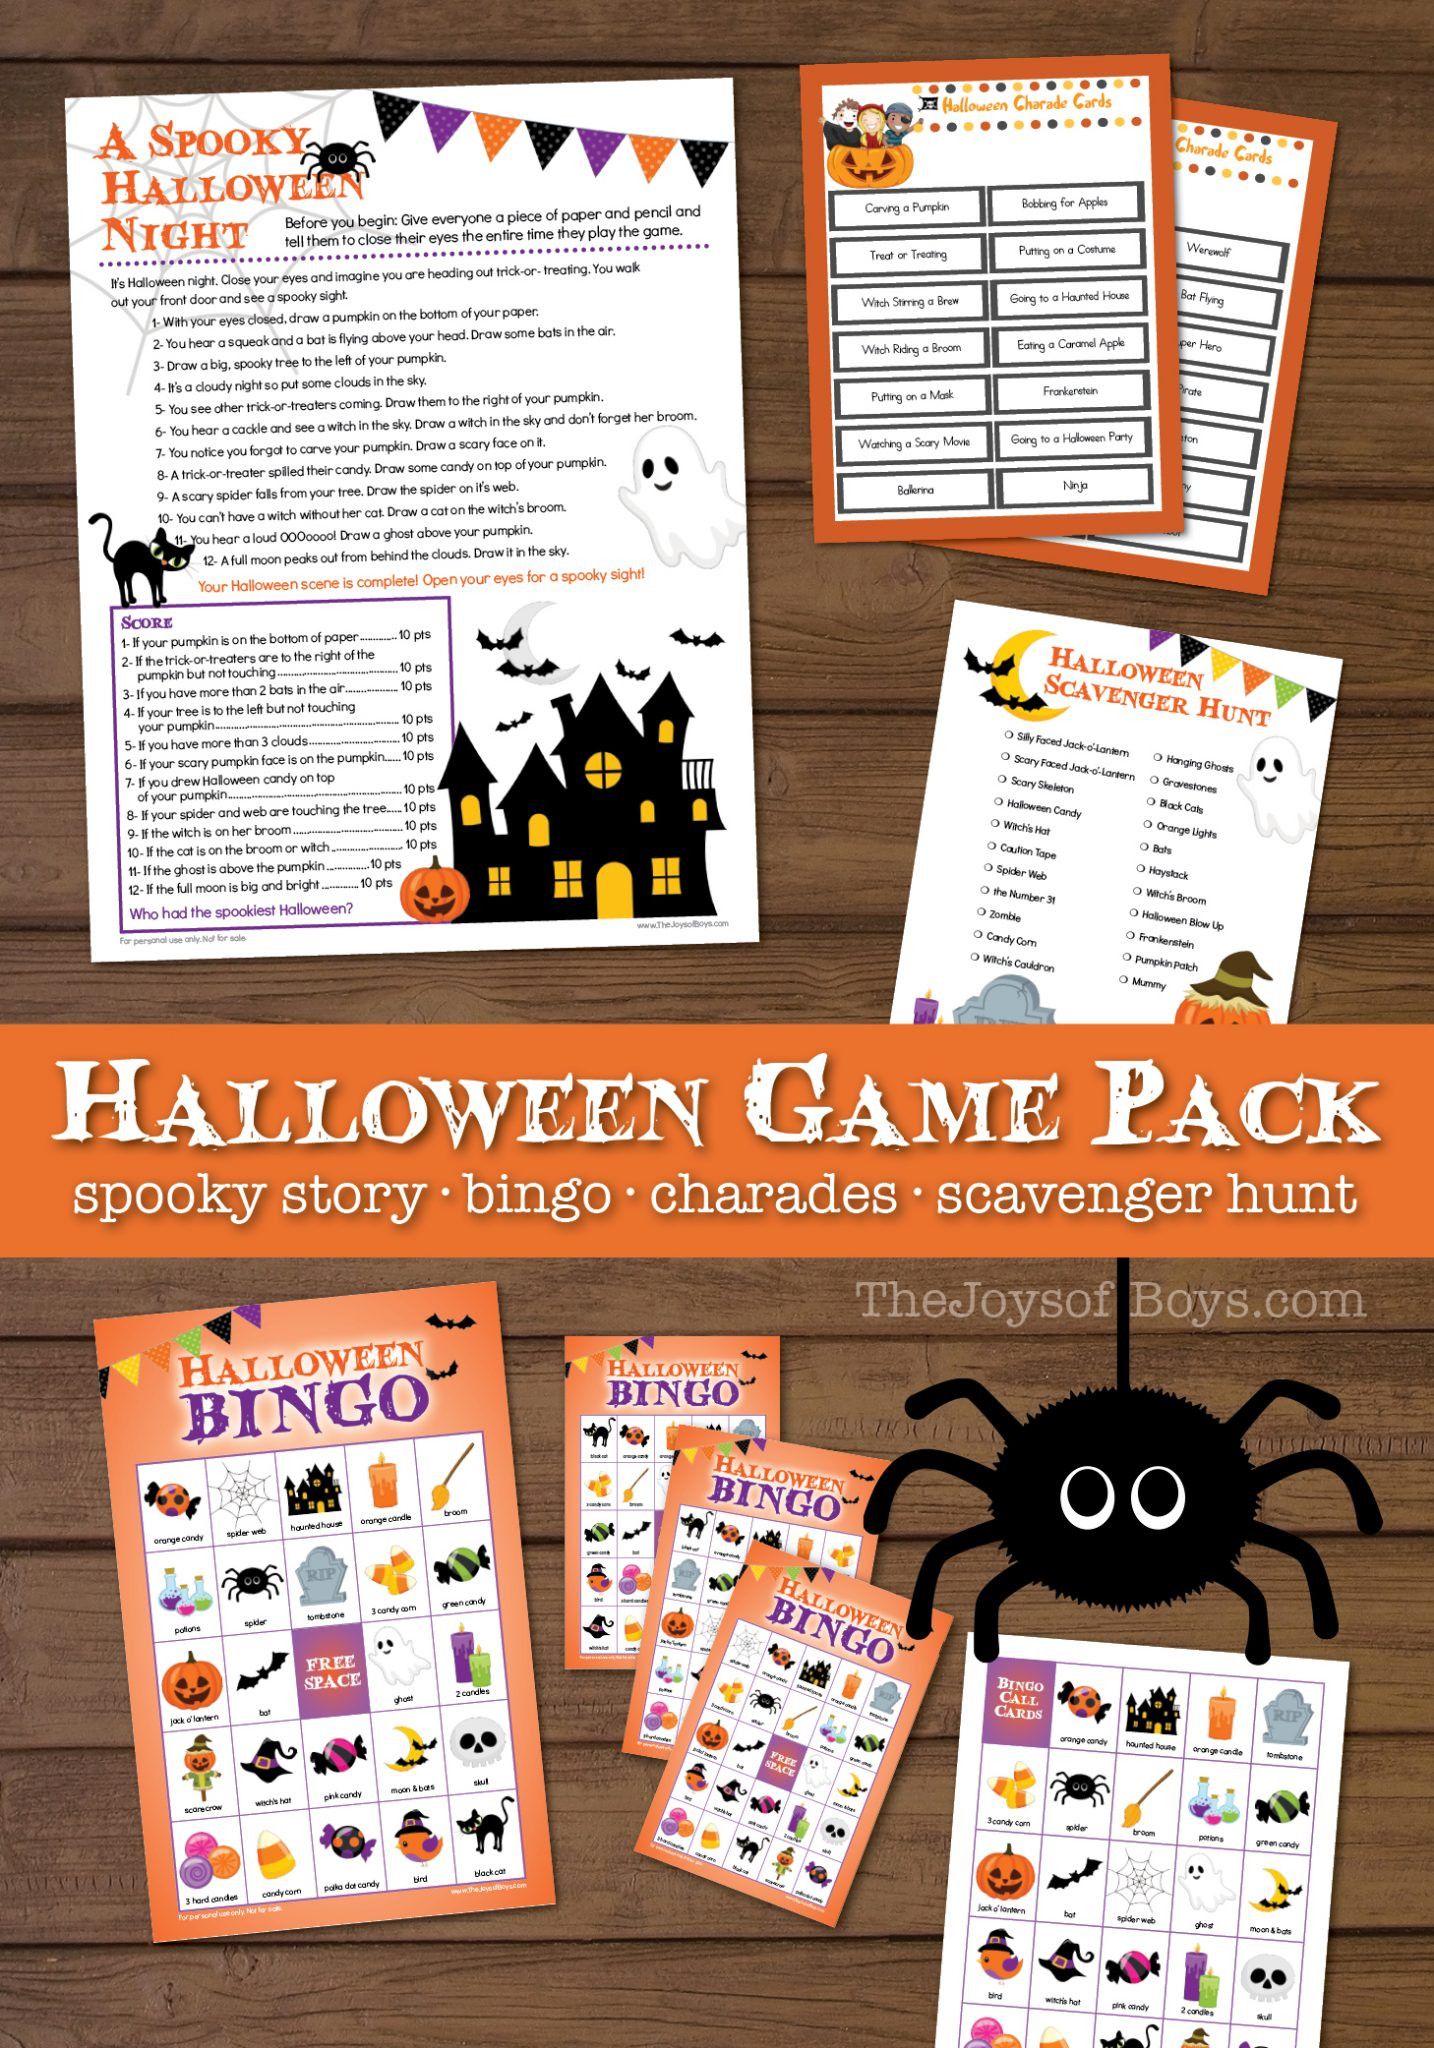 Free Halloween Party Game Ideas
 Printable Halloween Games for Kids Halloween Party Games